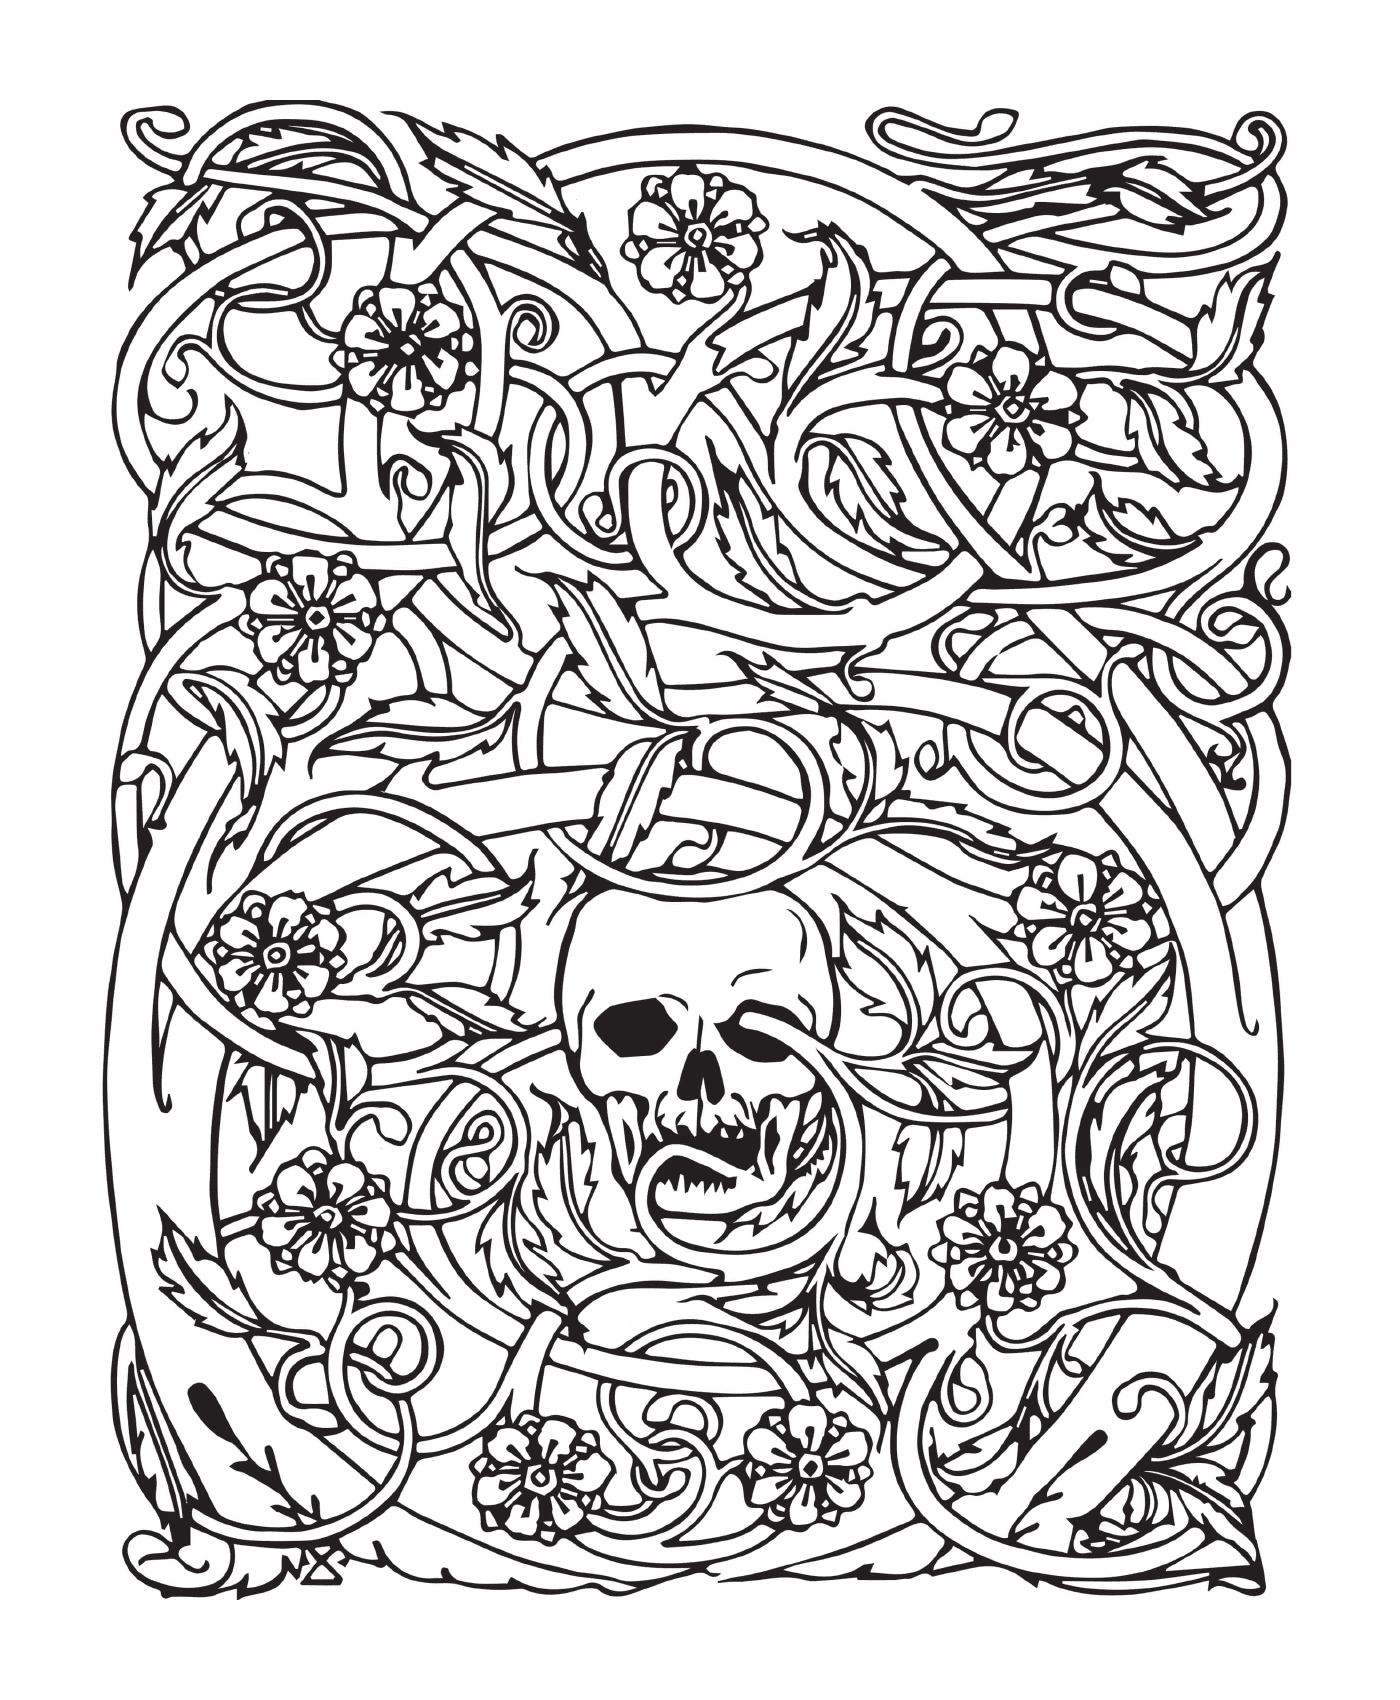  Halloween adulto, esqueleto complexo, rodeado por flores 